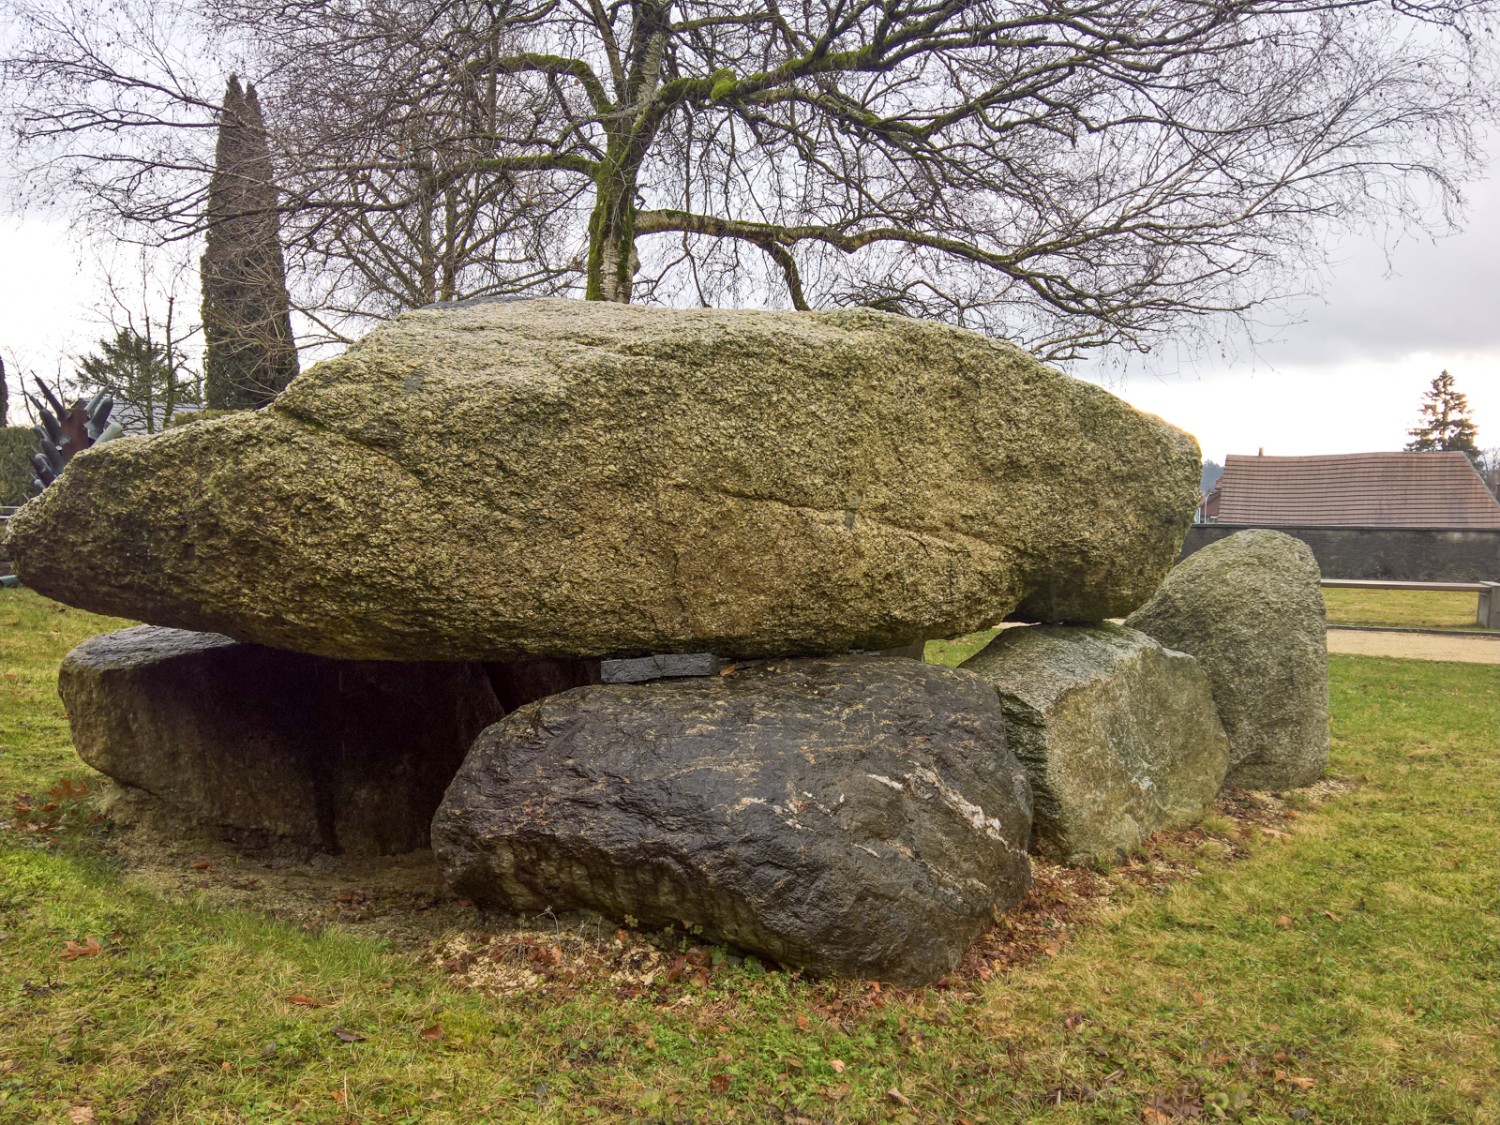 Le dolmen d’Oberbipp, un impressionnant mégalithe situé à côté de l’église. Photo: Andreas Staeger